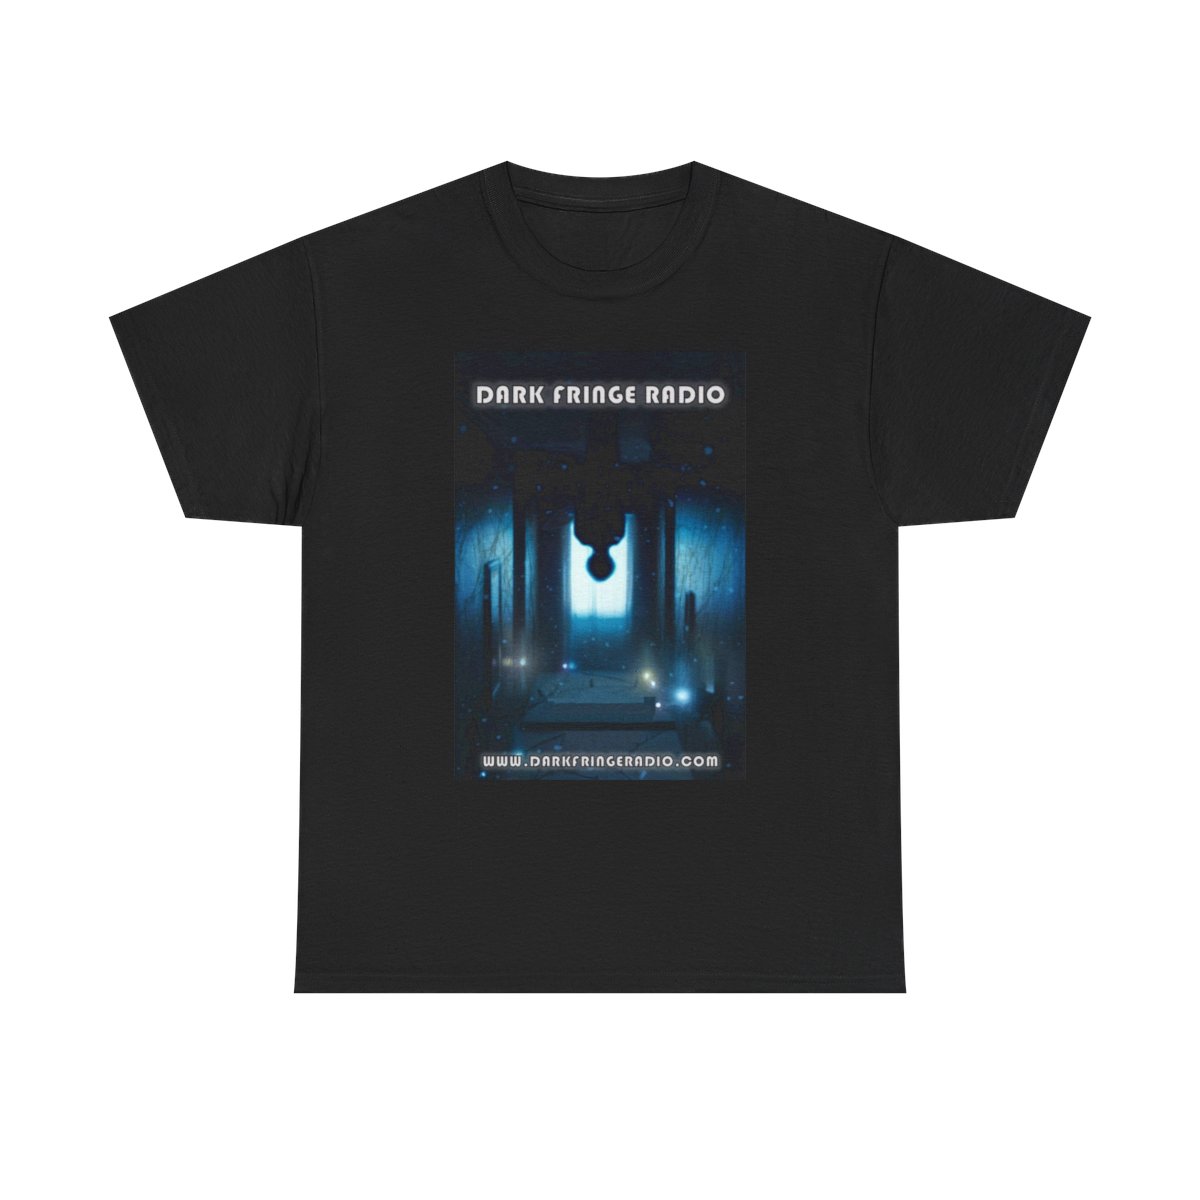 Dark Fringe Radio "Alternate Universe" T-Shirt product thumbnail image